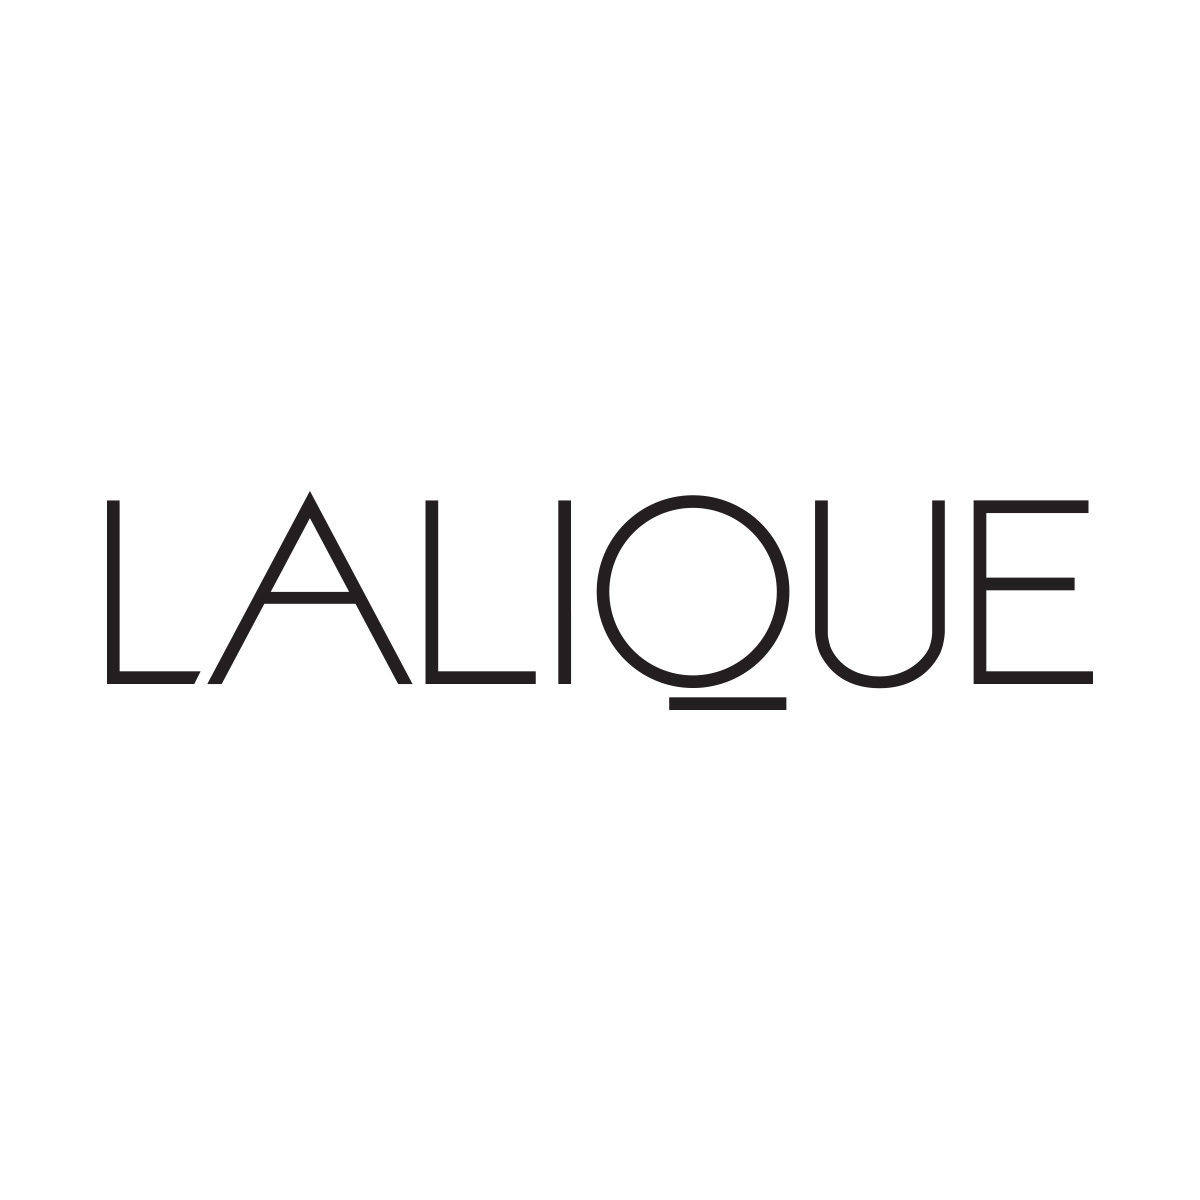 Lalique Perfume Encre Noire Pour Homme EDT 100ml